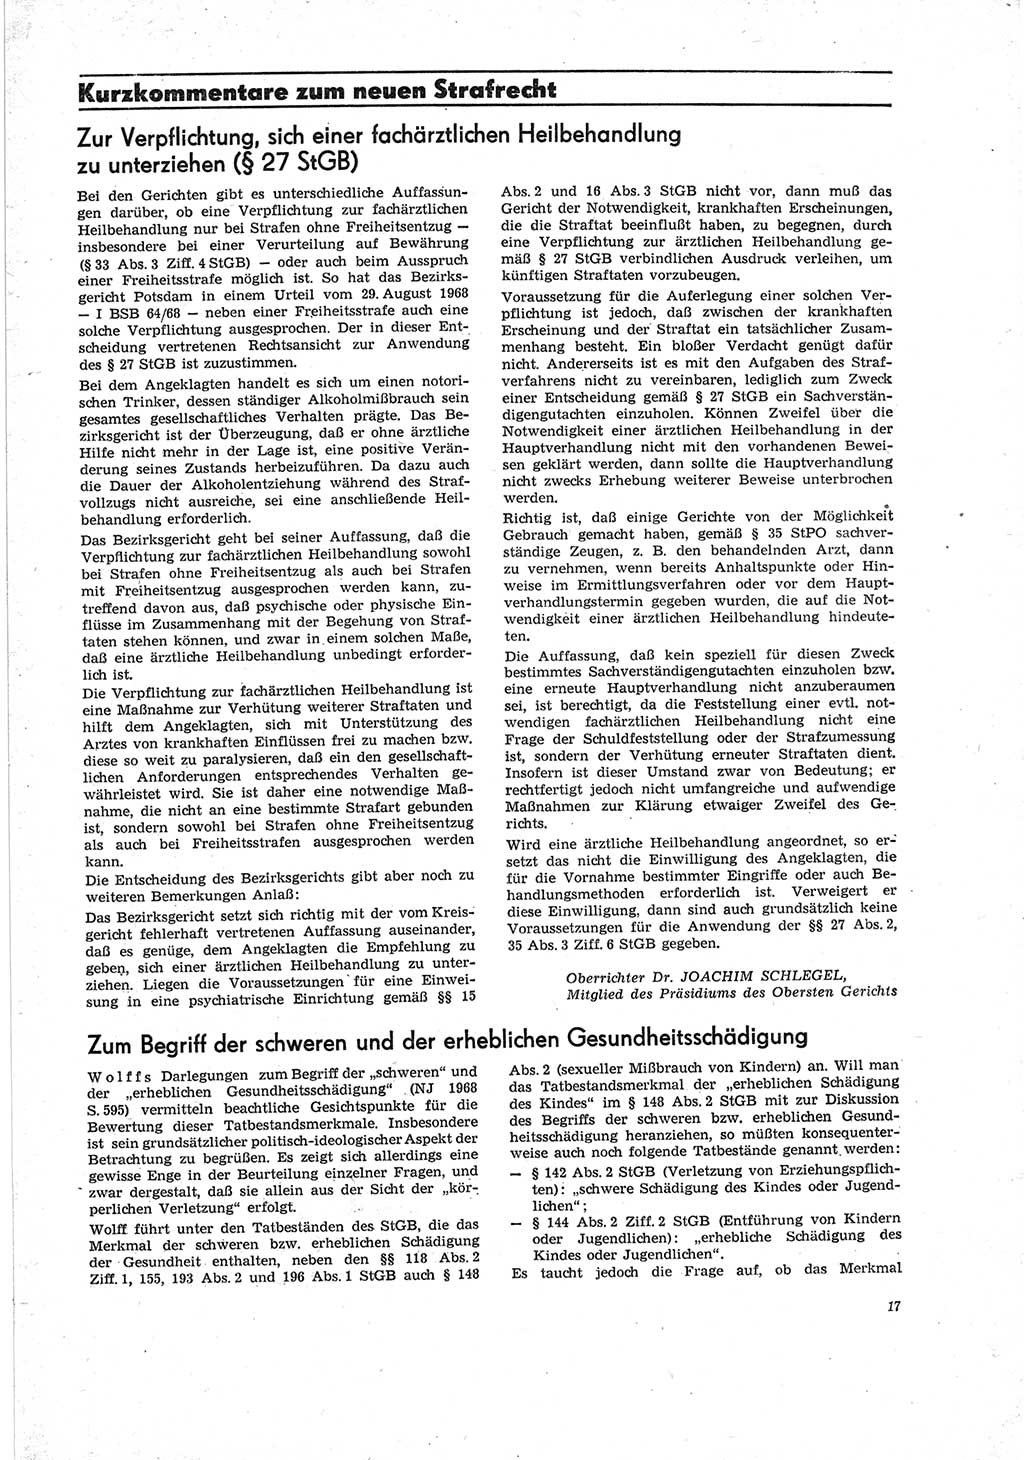 Neue Justiz (NJ), Zeitschrift für Recht und Rechtswissenschaft [Deutsche Demokratische Republik (DDR)], 23. Jahrgang 1969, Seite 17 (NJ DDR 1969, S. 17)